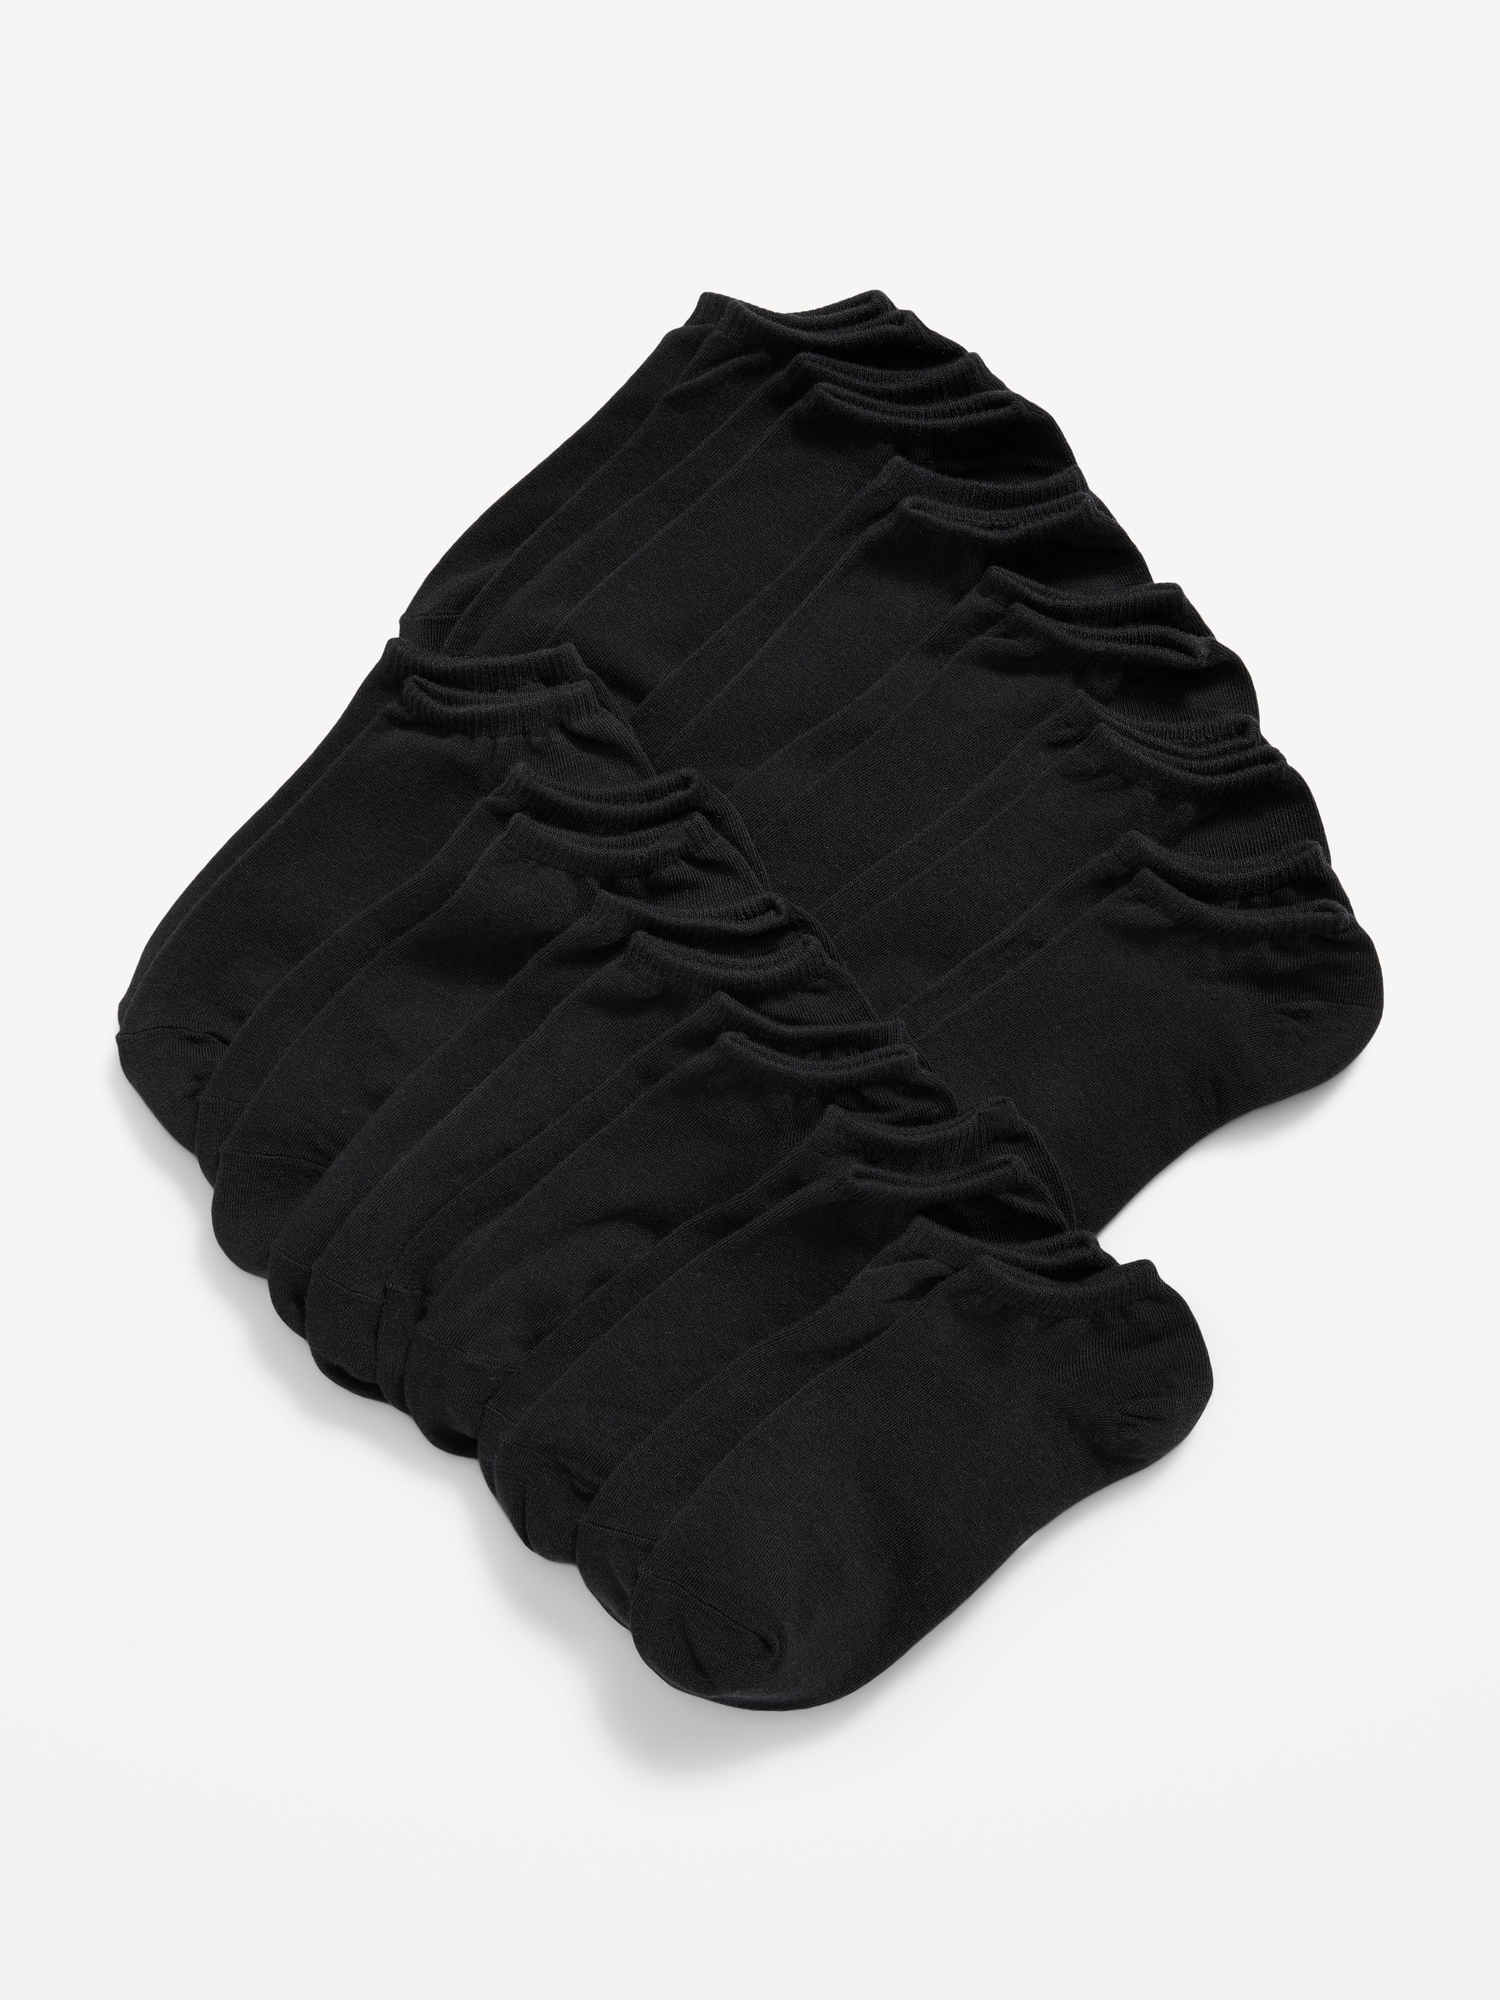 Old Navy Ankle Socks 12-Pack For Women black. 1